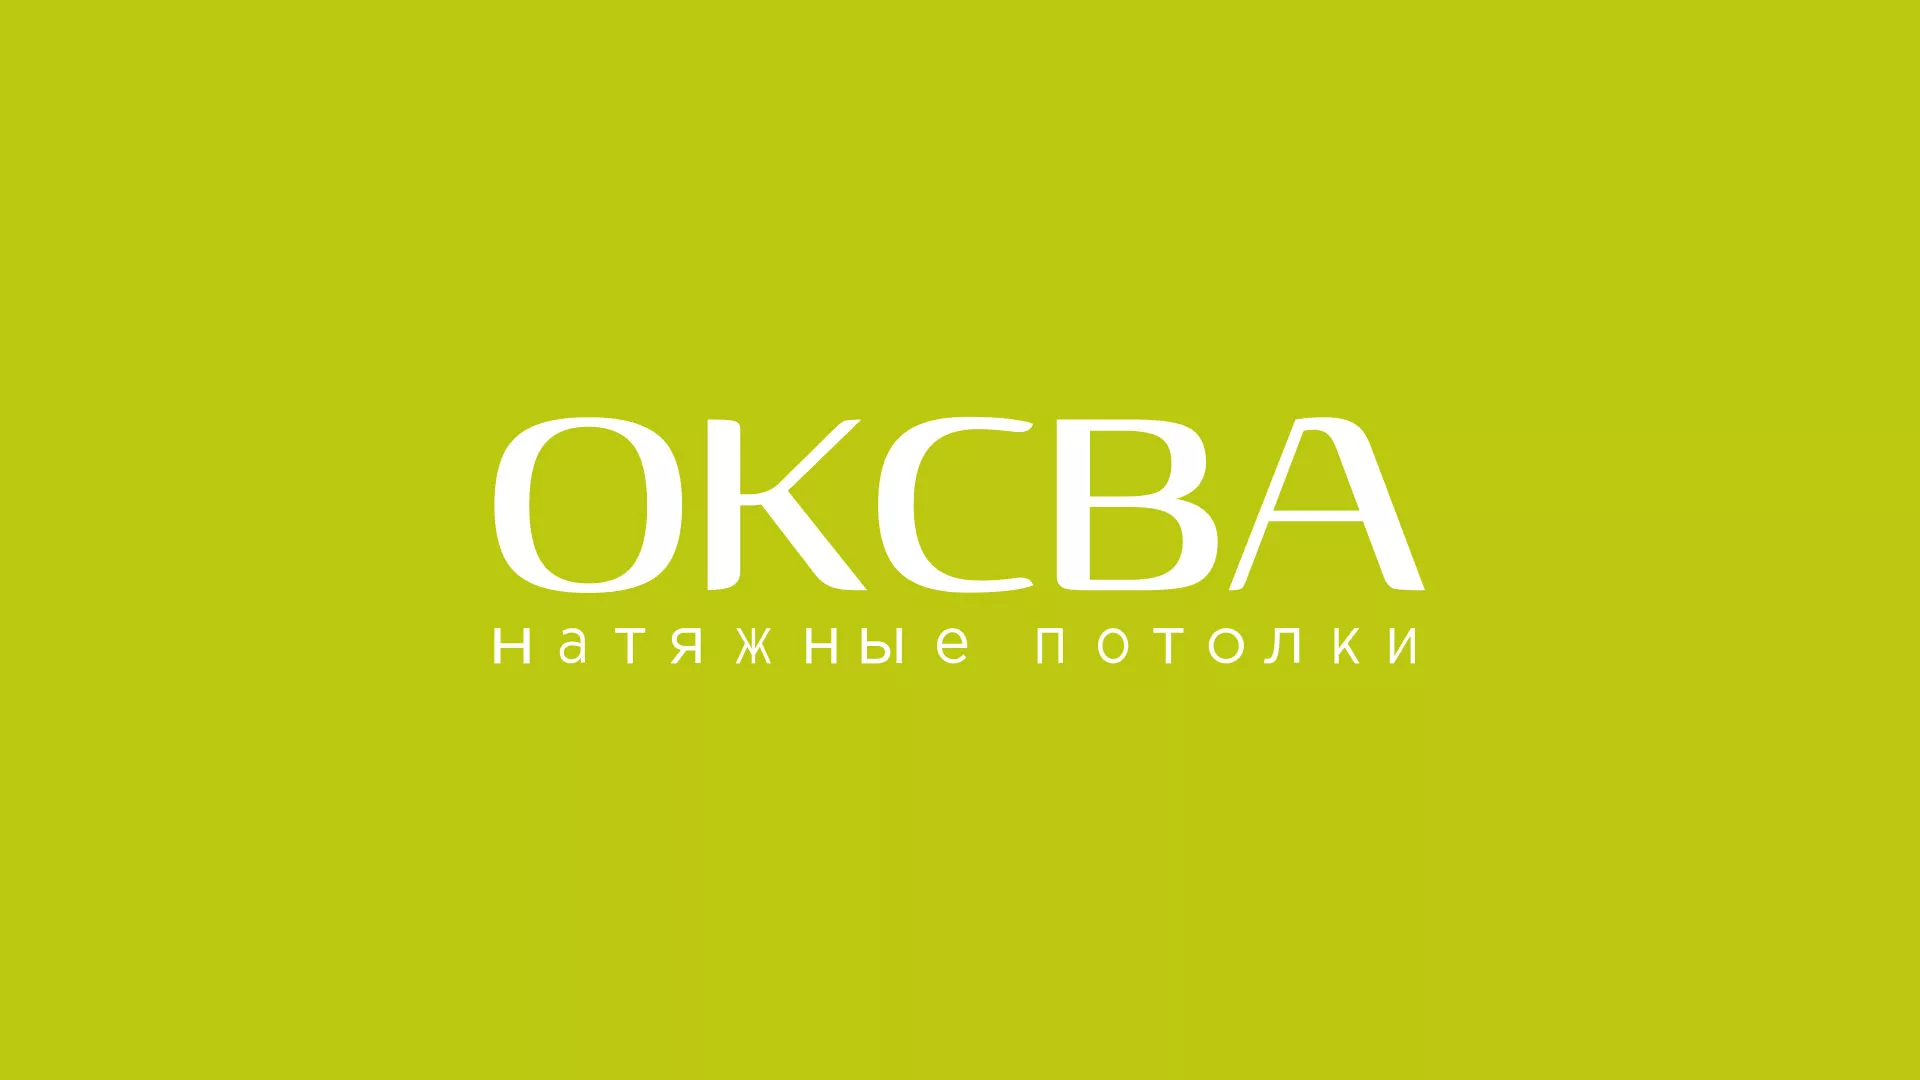 Создание сайта по продаже натяжных потолков для компании «ОКСВА» в Ликино-Дулево